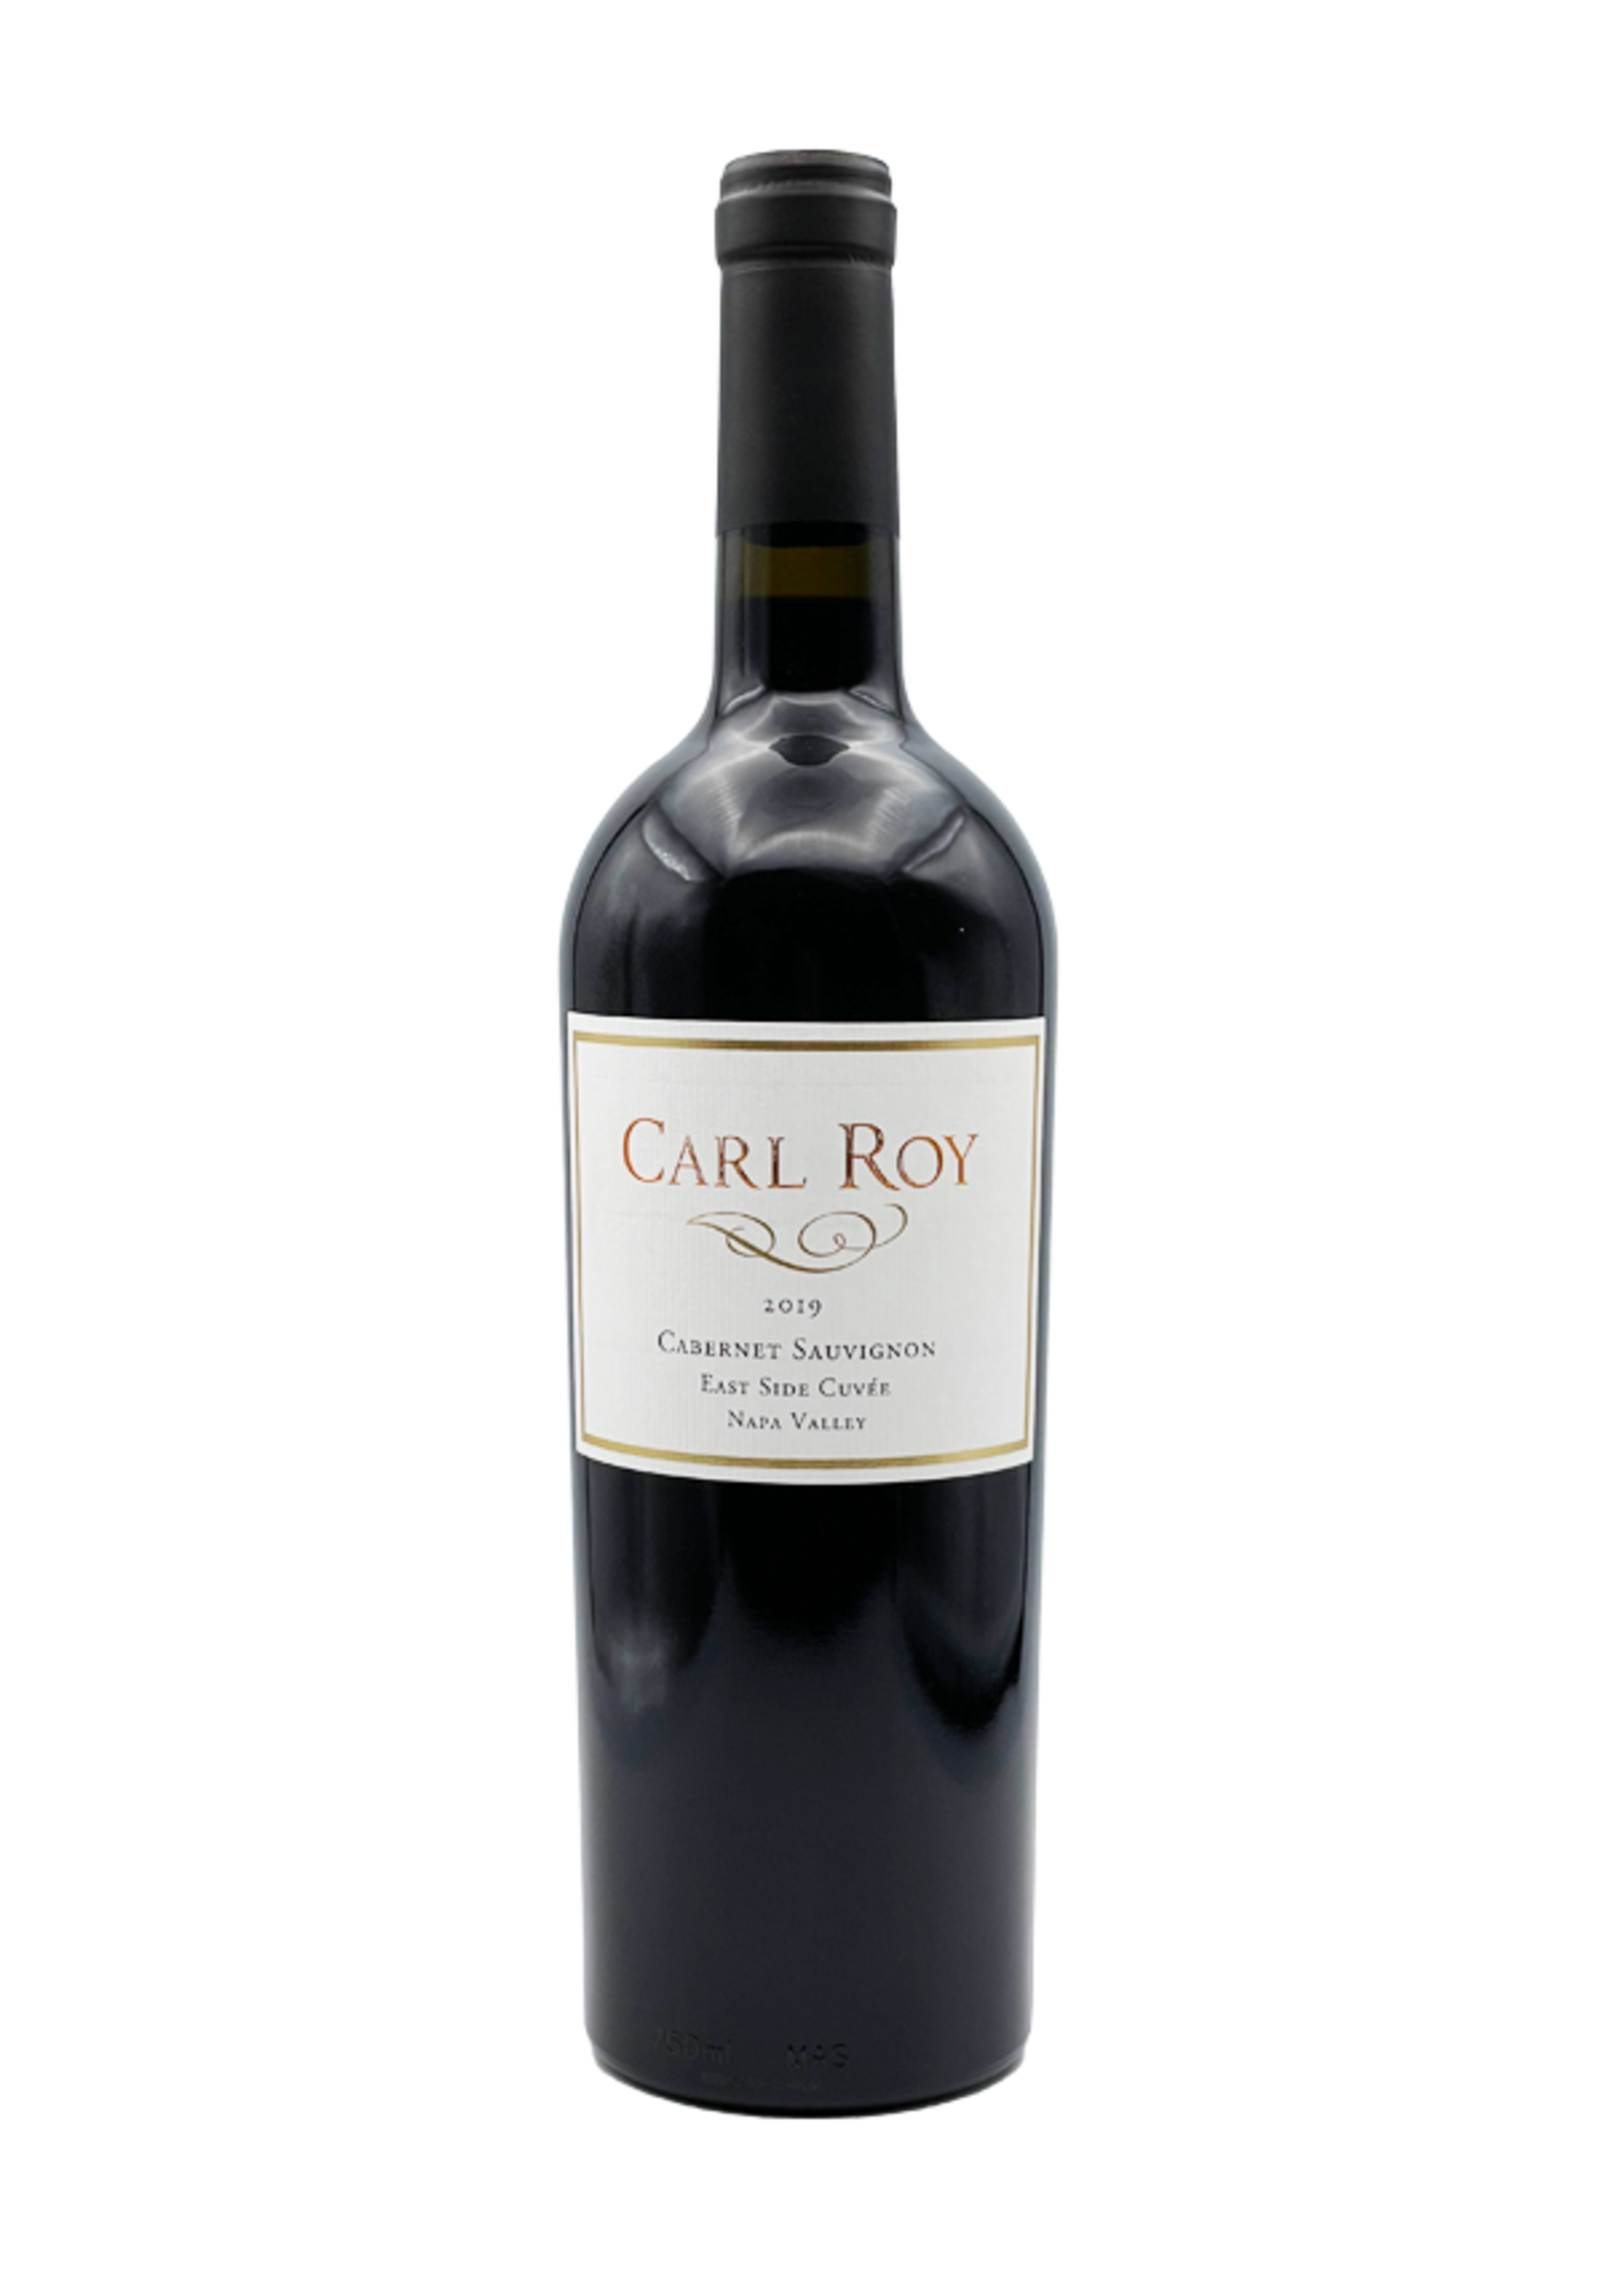 Cabernet Sauvignon "East Side Cuvée" 2019 Carl Roy